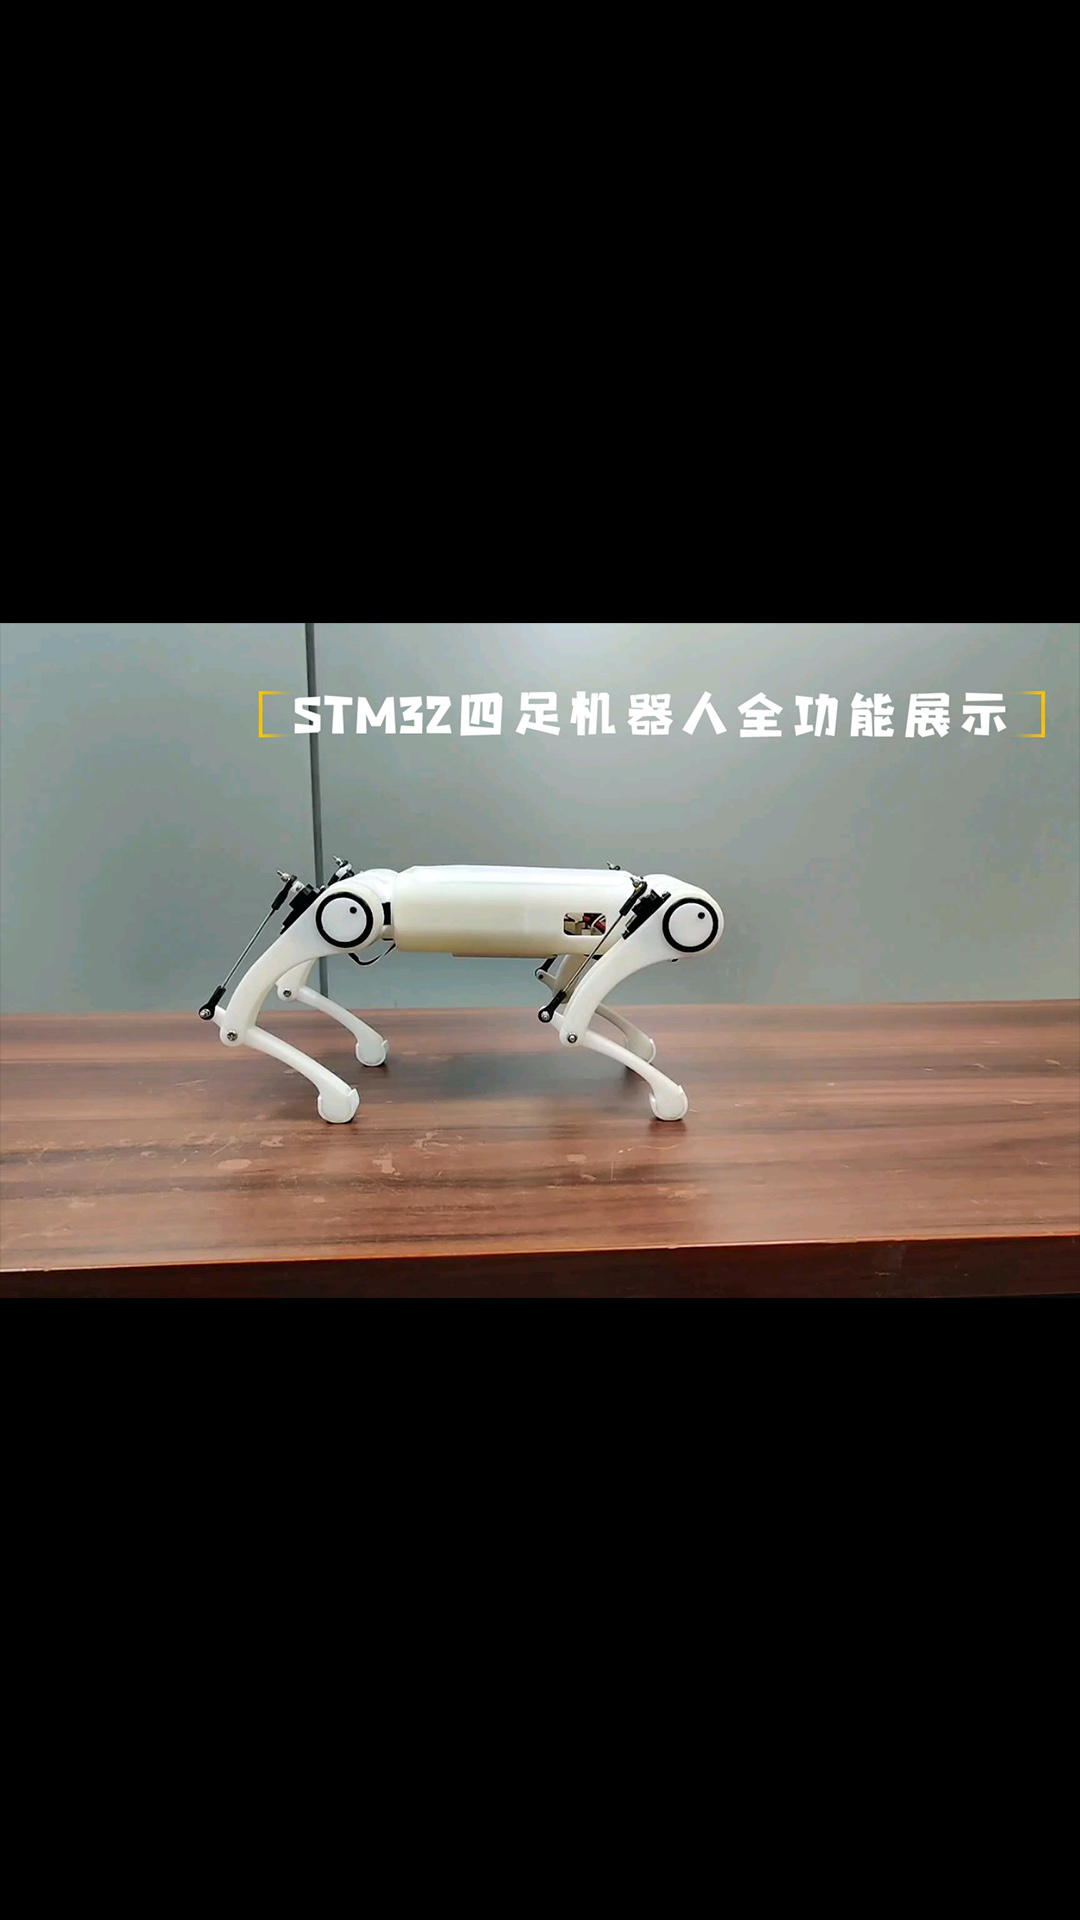 【四足机器人】STM32G0主控QR-Mini1全功能展示 